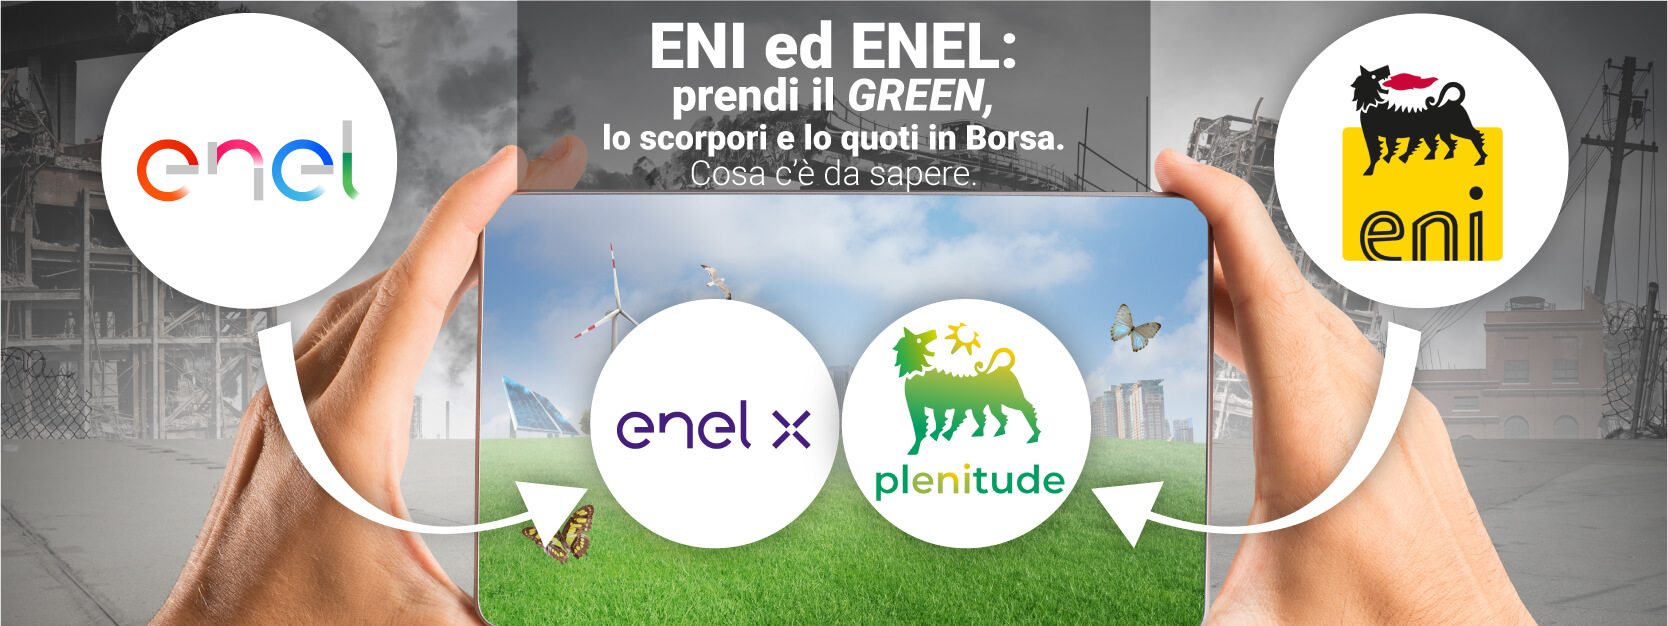 Azioni Eni e Enel, svolta green e sostenibile. In Borsa scorporare ora è di moda. Ecco perchè.